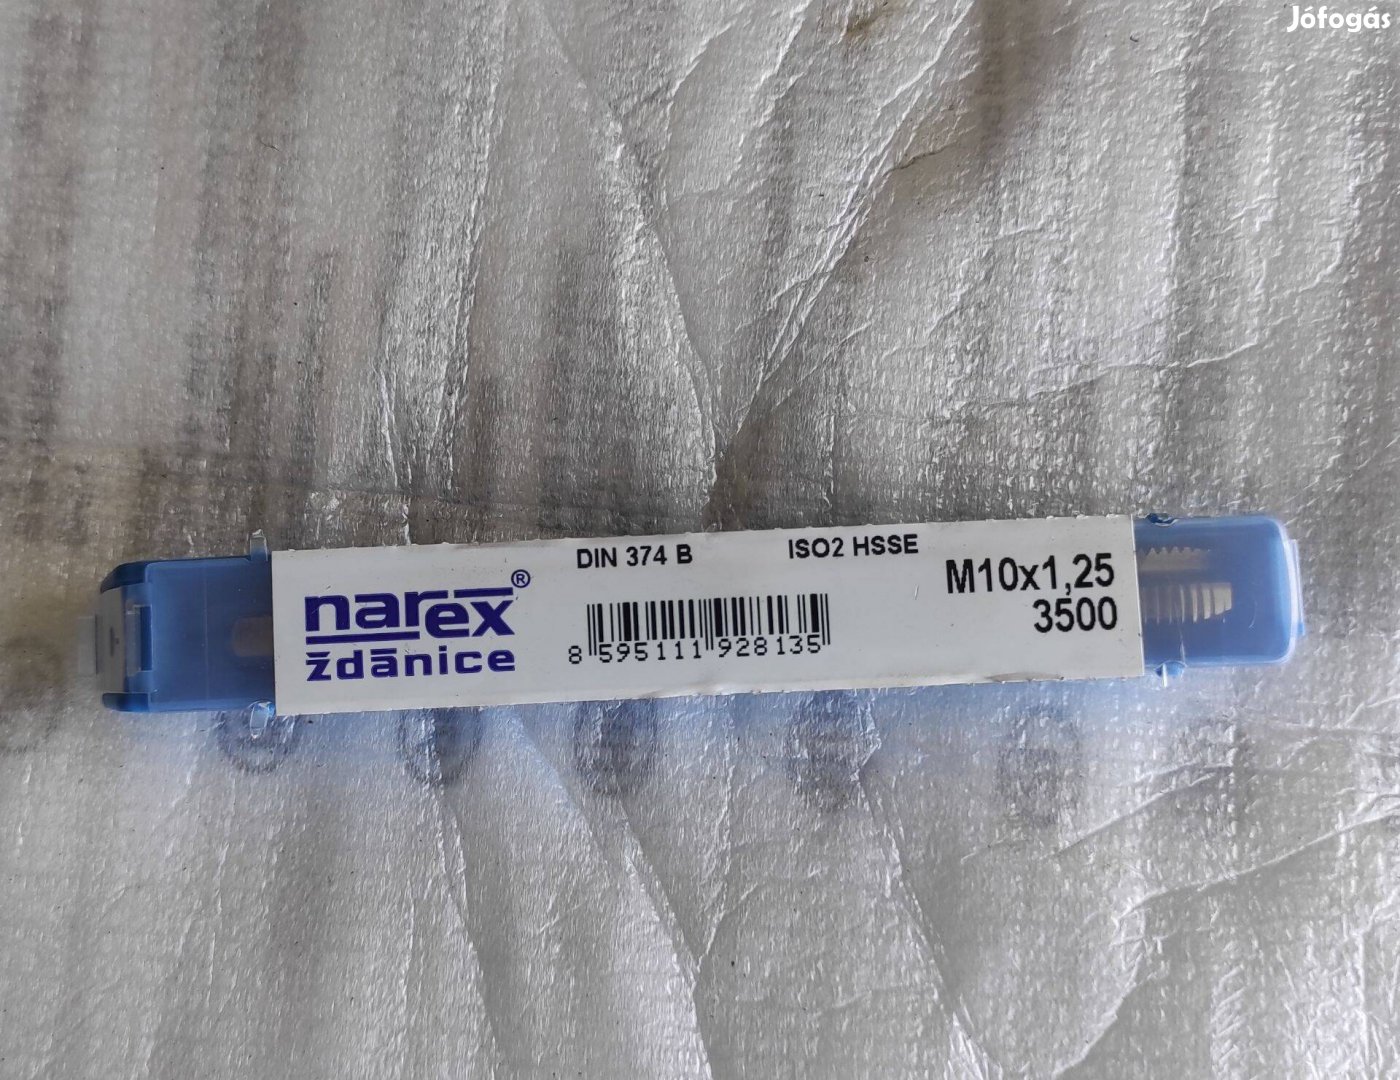 Narex típusú, M10x1.25 menetfúró eladó